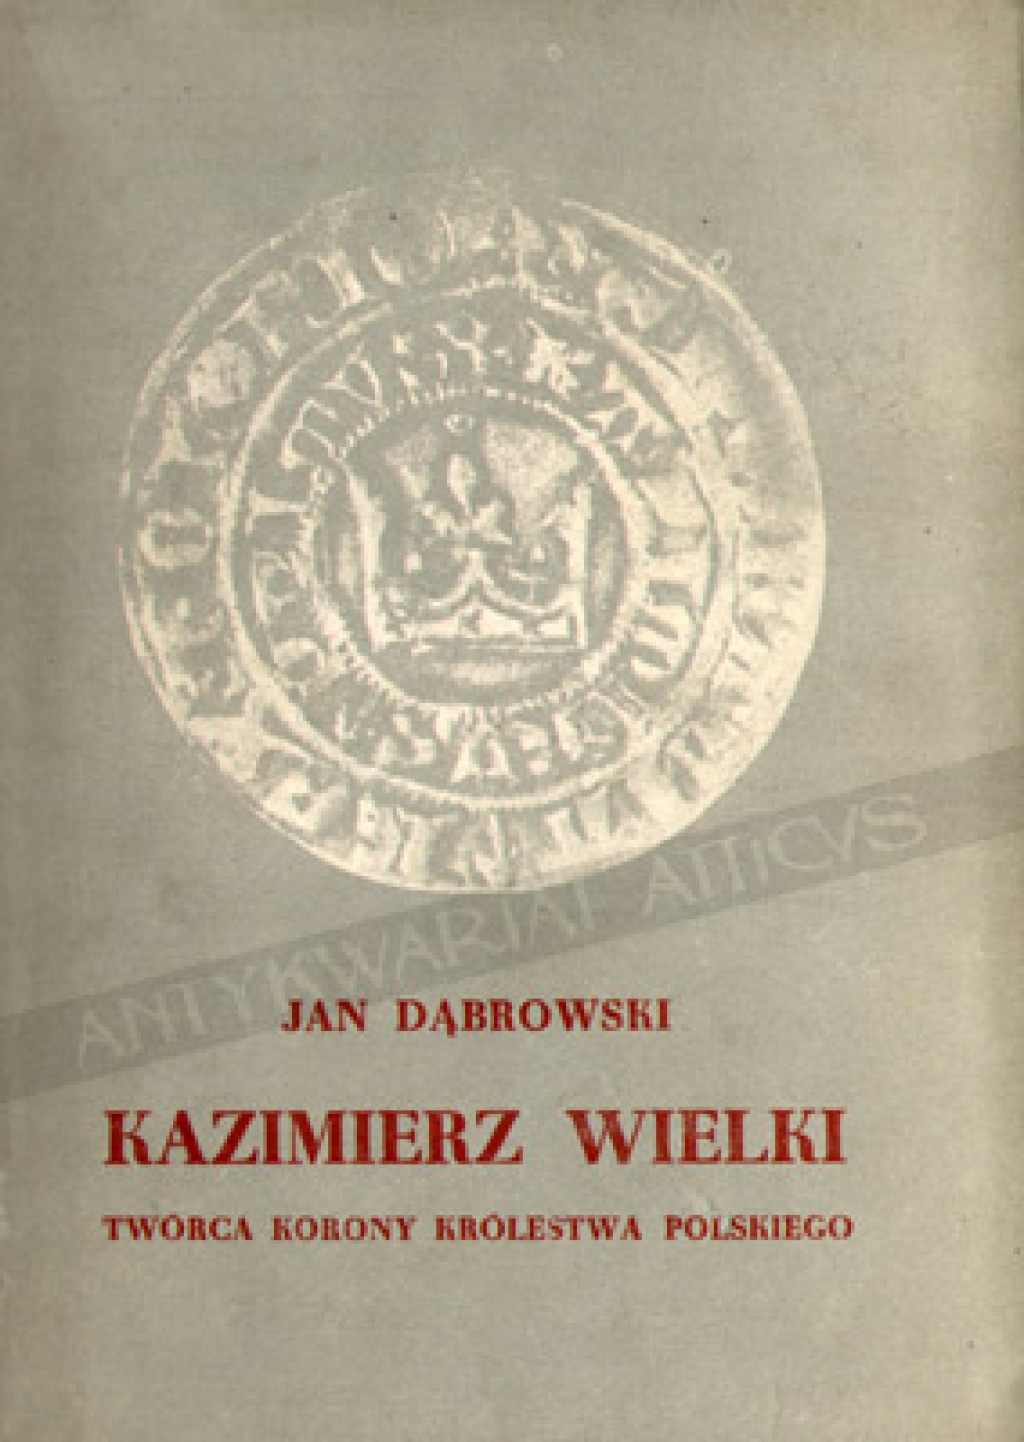 Kazimierz Wielki - twórca Korony Królestwa Polskiego